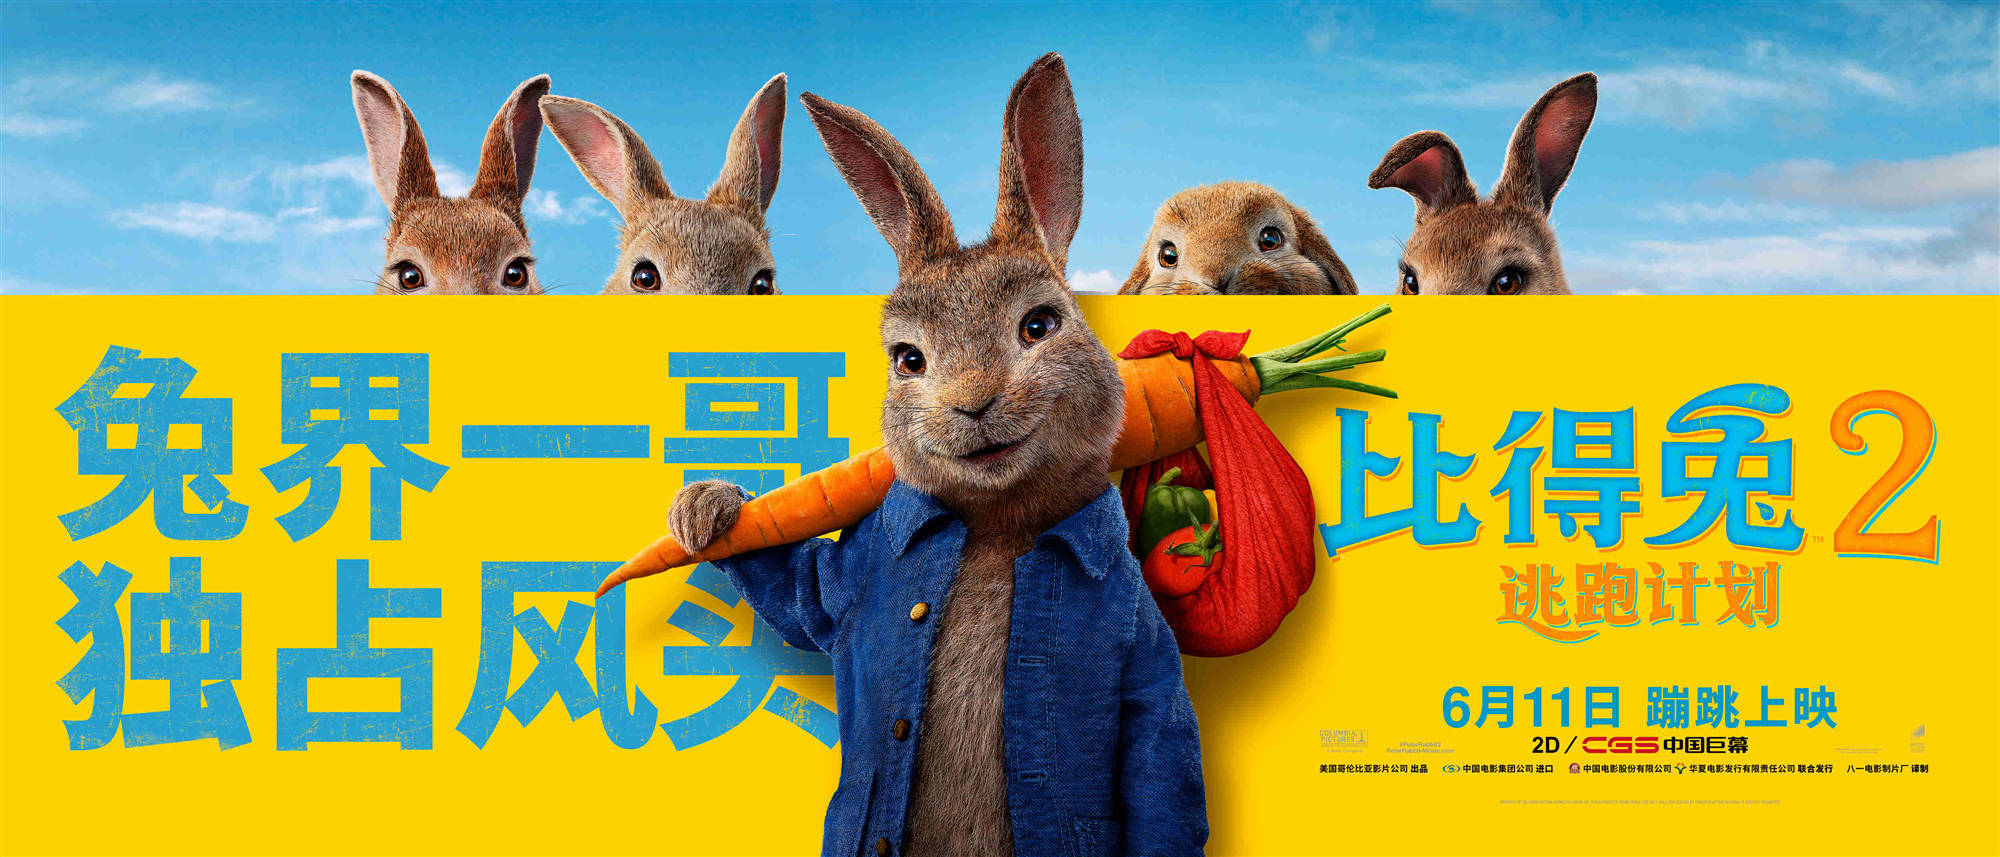 《比得兔2：逃跑计划》定档6月11日 郭麒麟惊喜献声比得兔